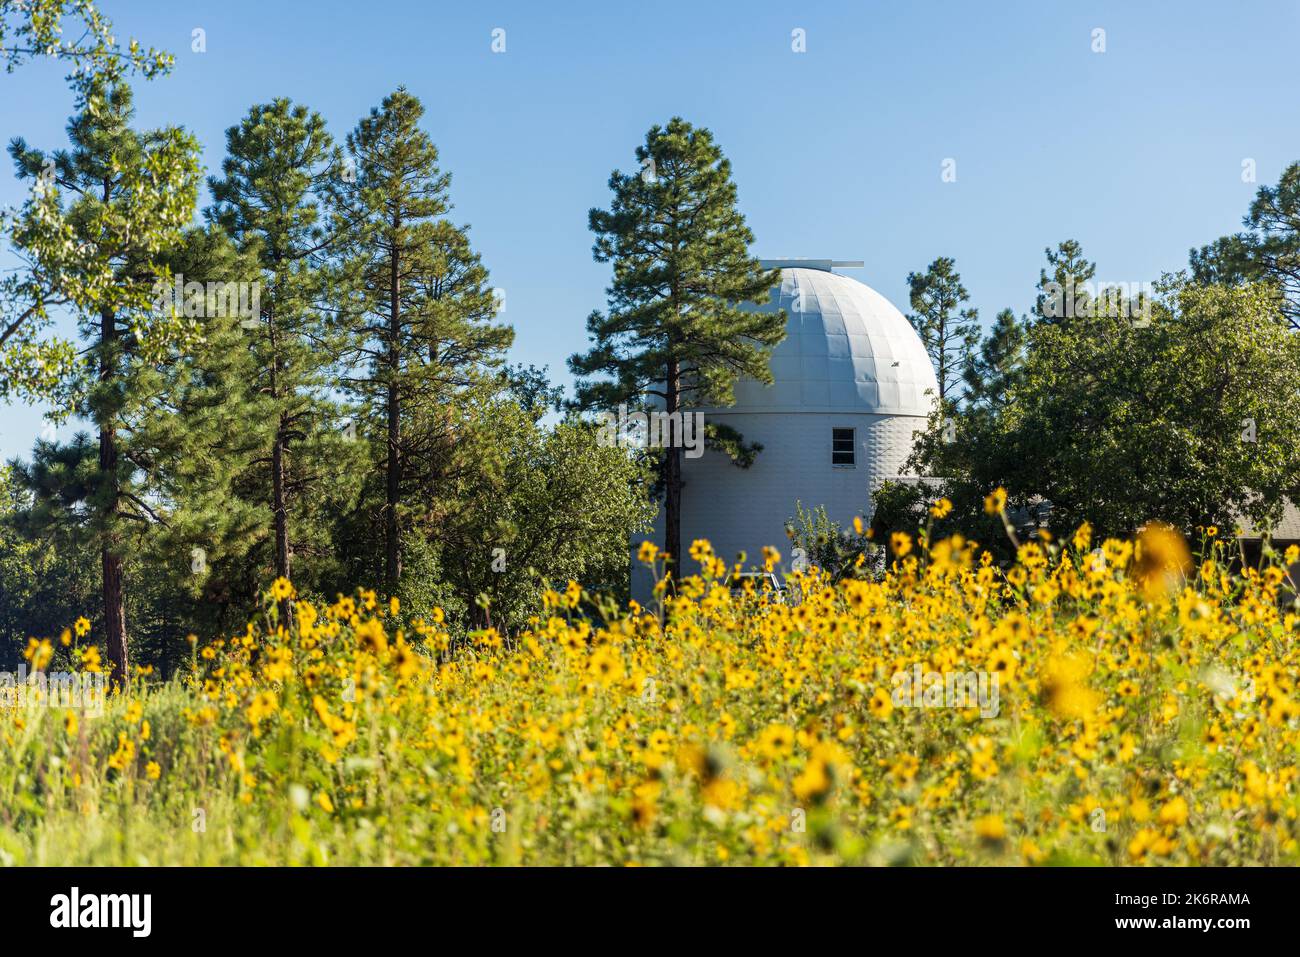 FLAGSTAFF, Arizona - 1 SETTEMBRE 2022: Lowell Observatory, famoso osservatorio in Arizona fondato da Percival Lowell. Foto Stock